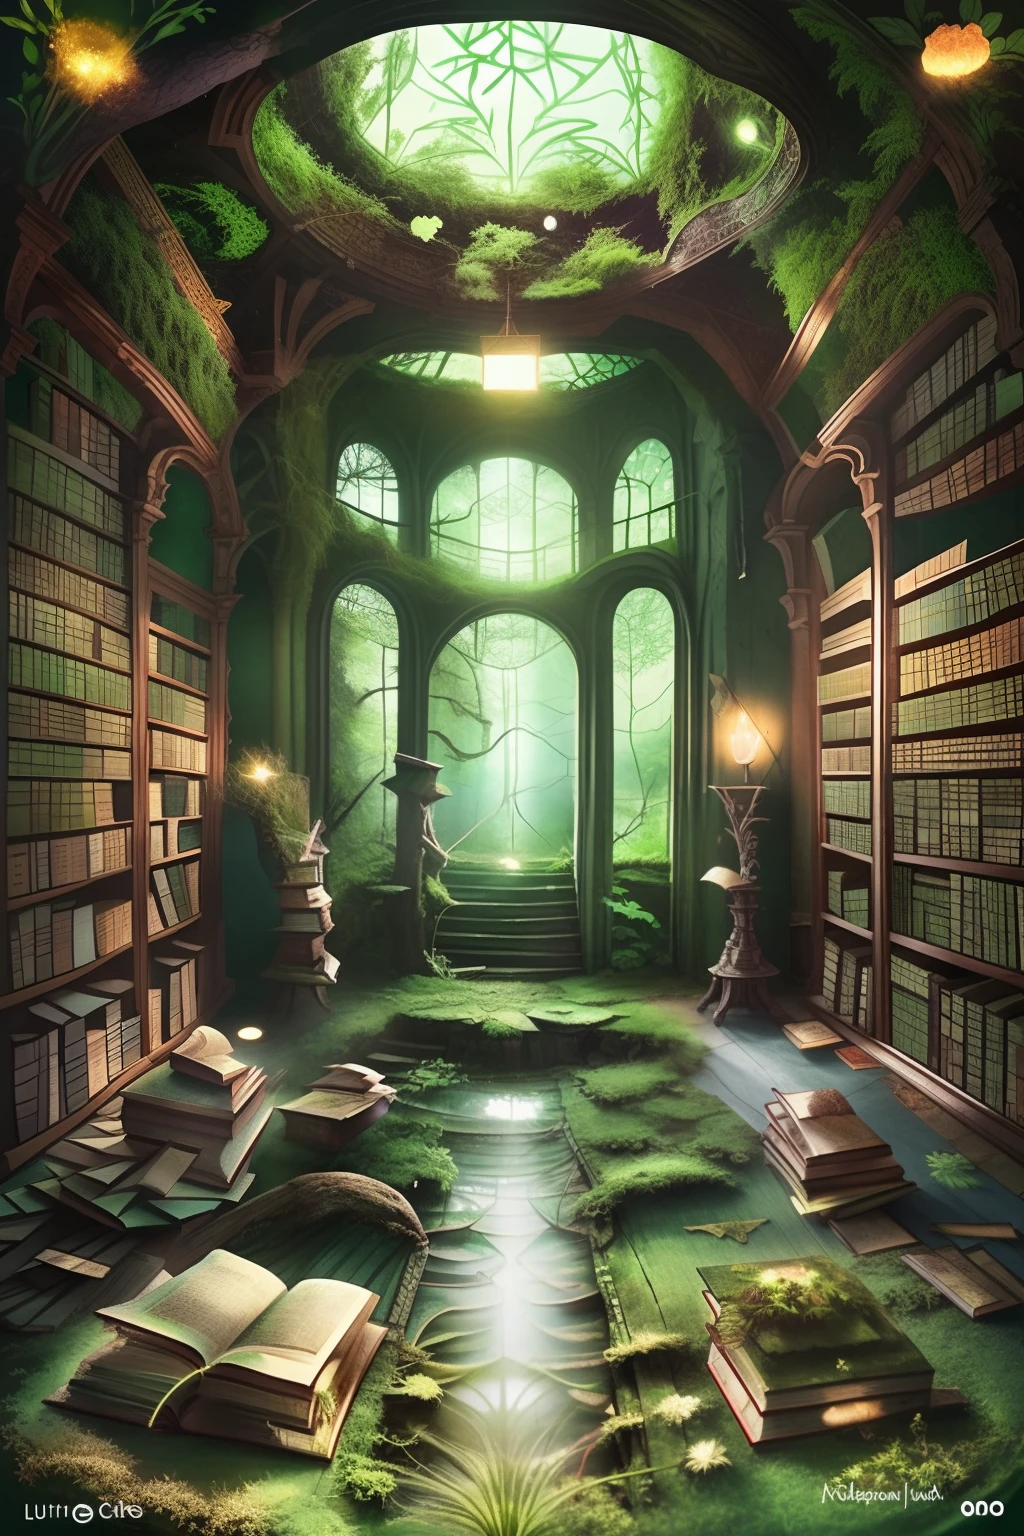 Uma obra-prima hipnotizante de uma biblioteca abandonada, com ilustrações ultradetalhadas de livros míticos revestidos por uma camada de musgo verde-floresta no centro do chão, iluminado pelo brilho suave da luz filtrada.